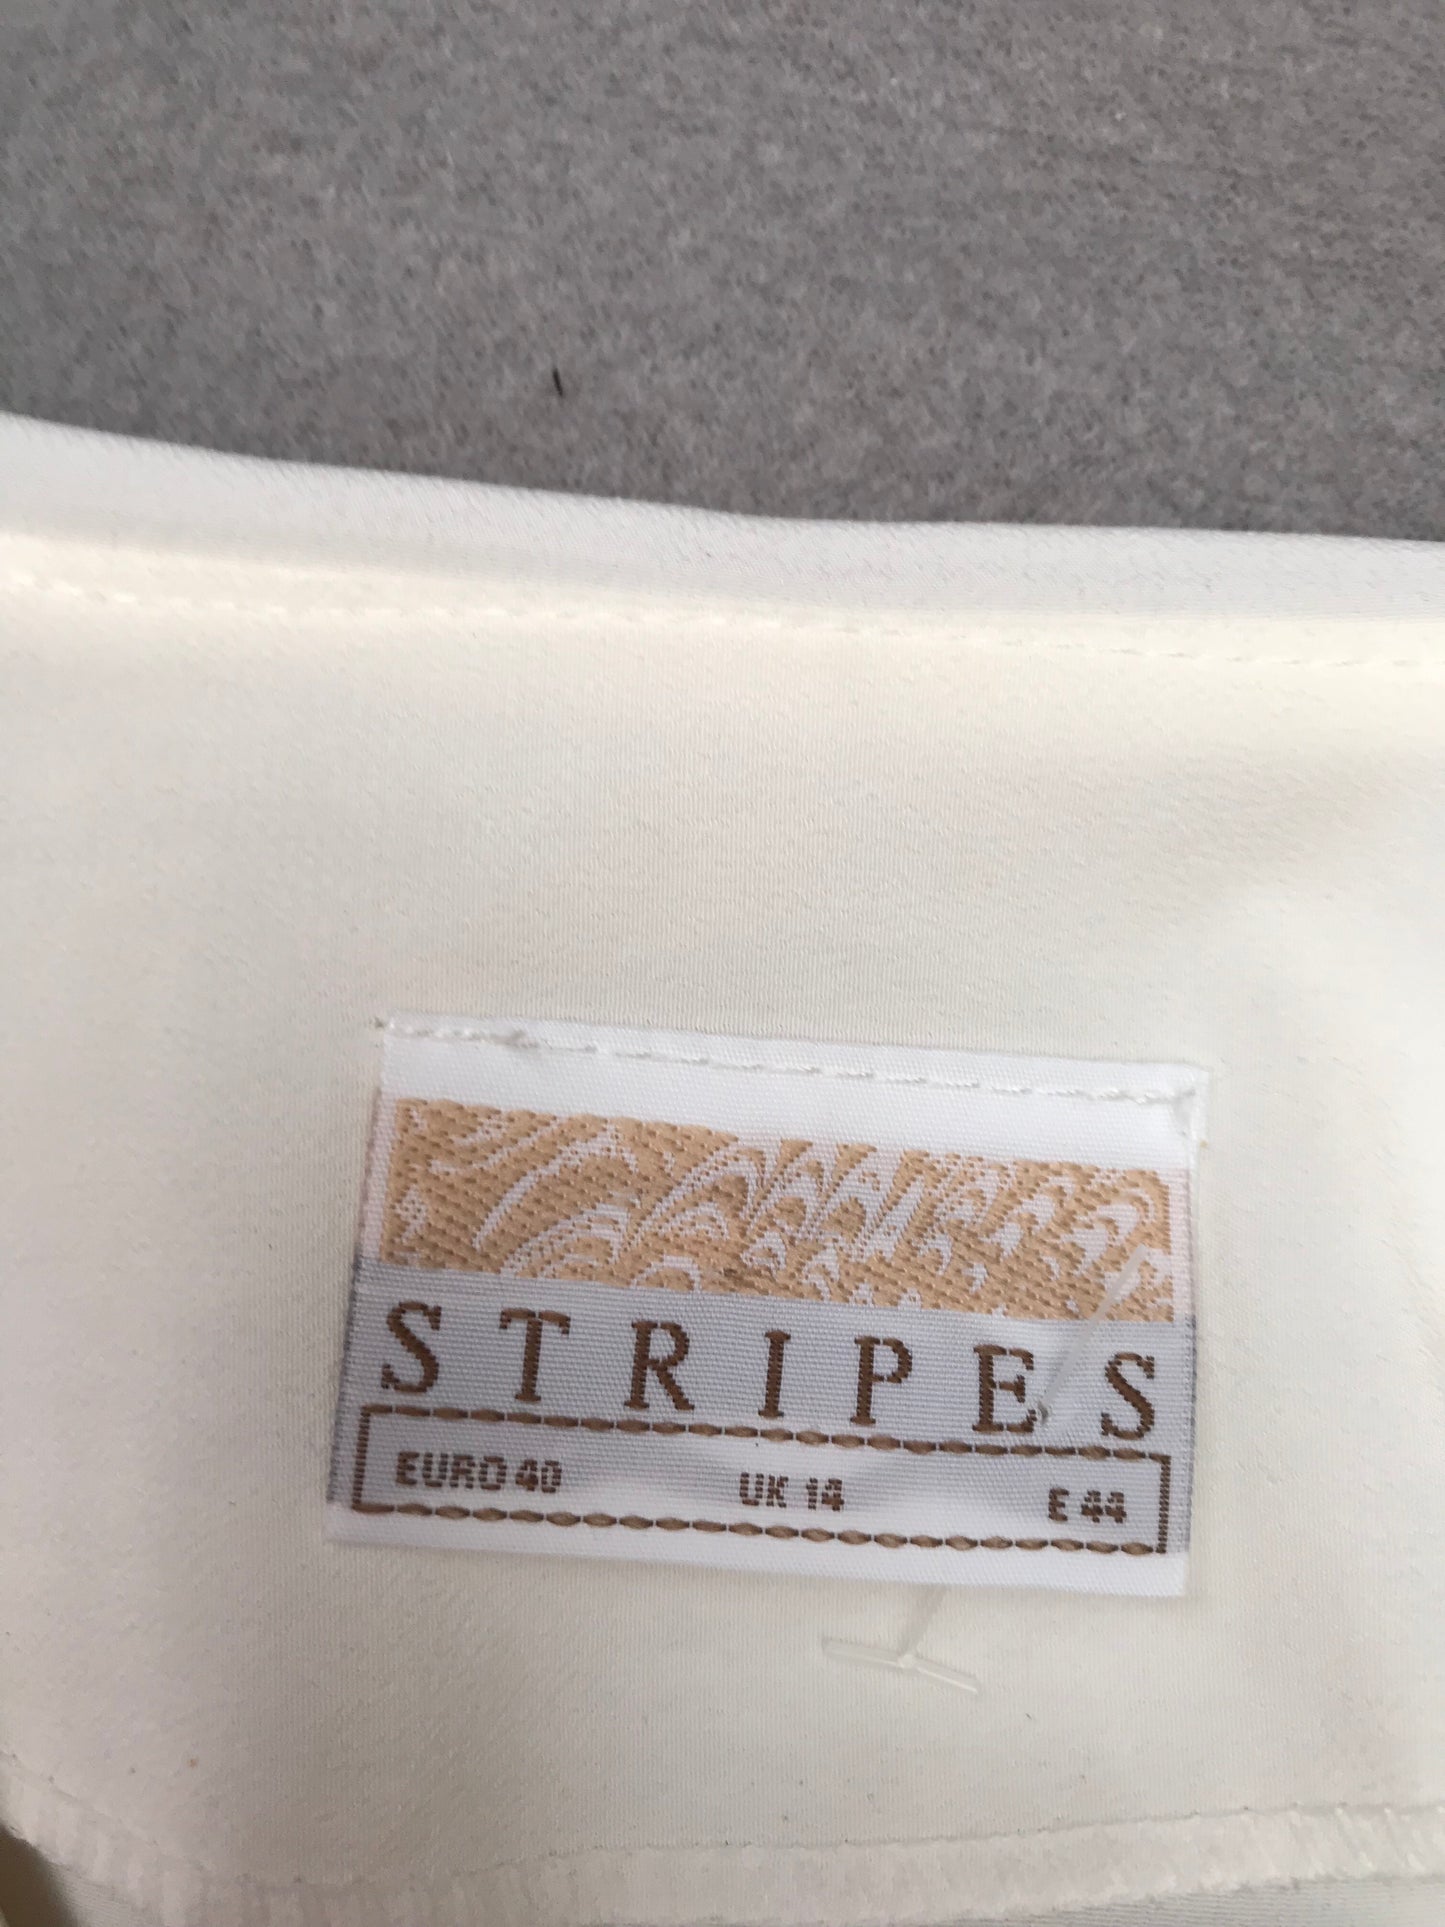 Stripes white shirt size 14 women’s FREE POSTAGE